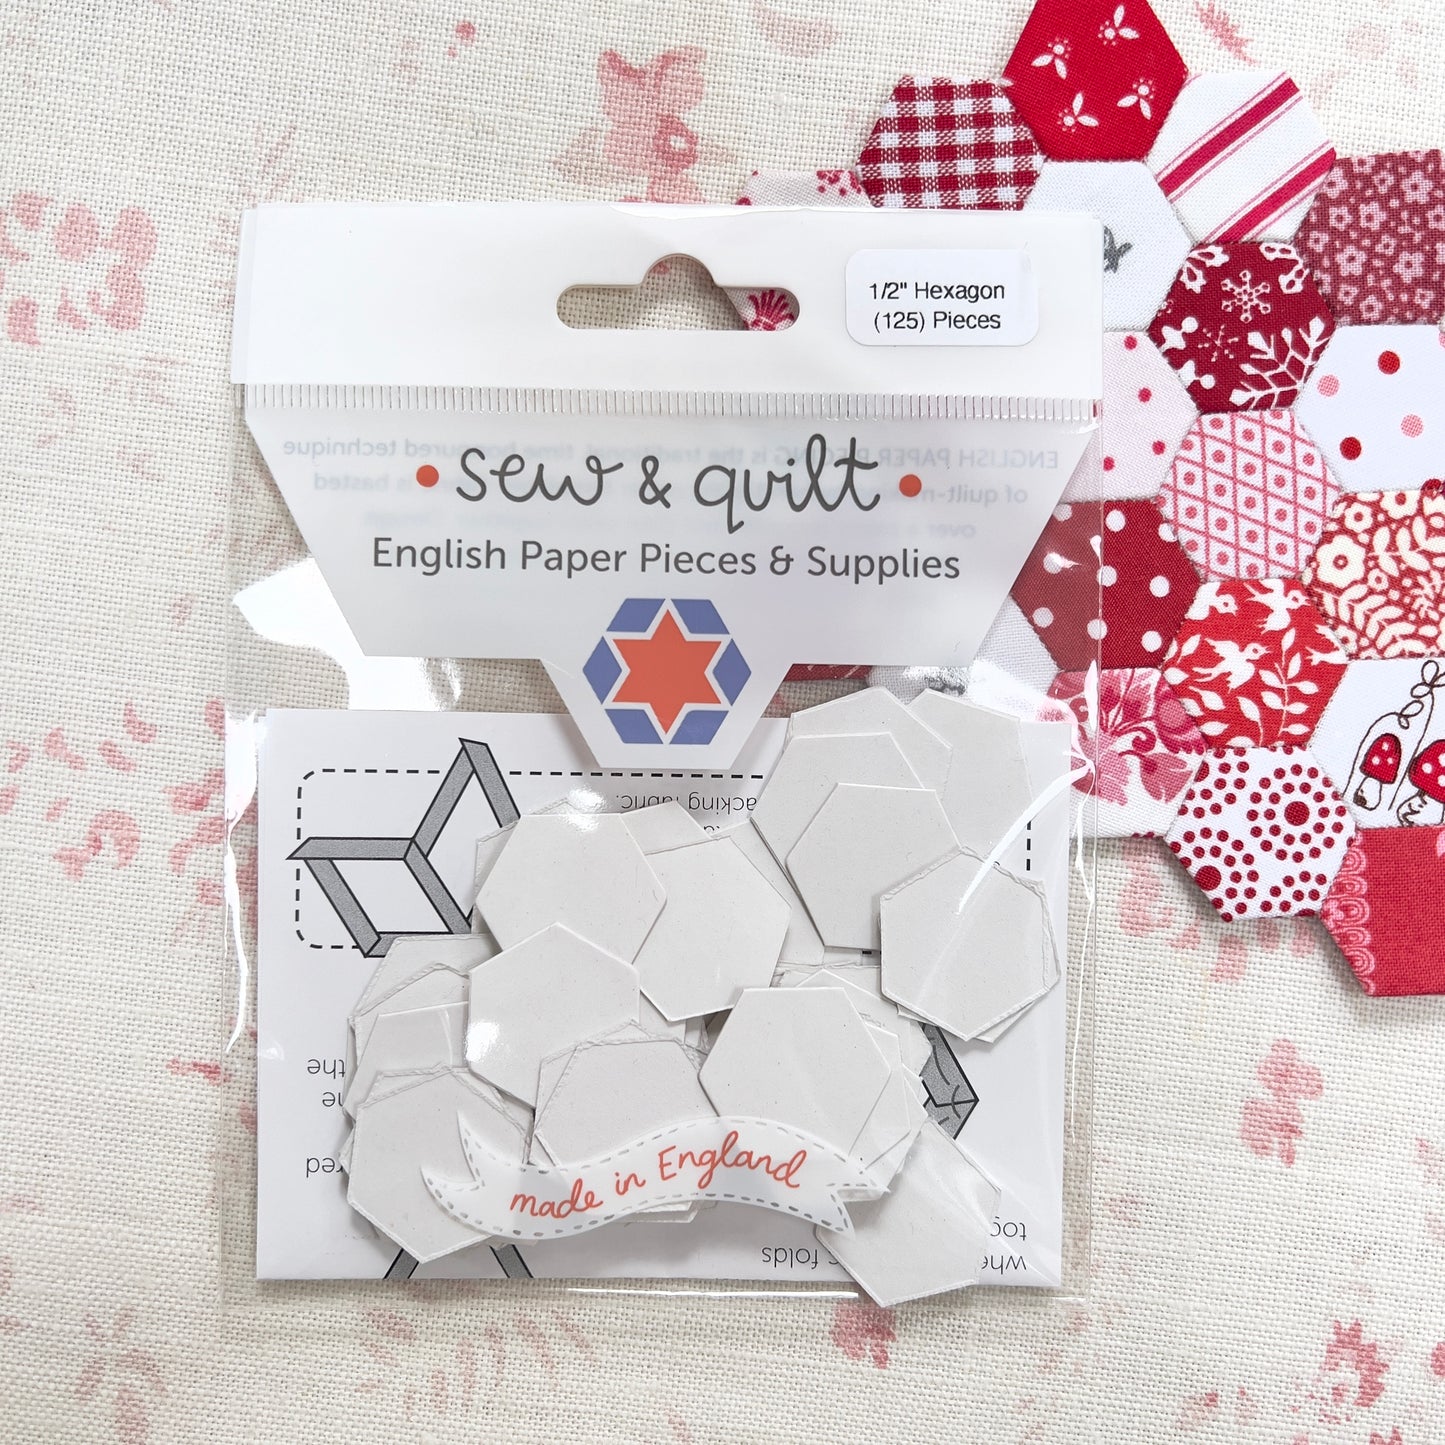 Sew &amp; Quilt - Modèles d'assemblage de papier anglais 1/2" Hexagone x 125